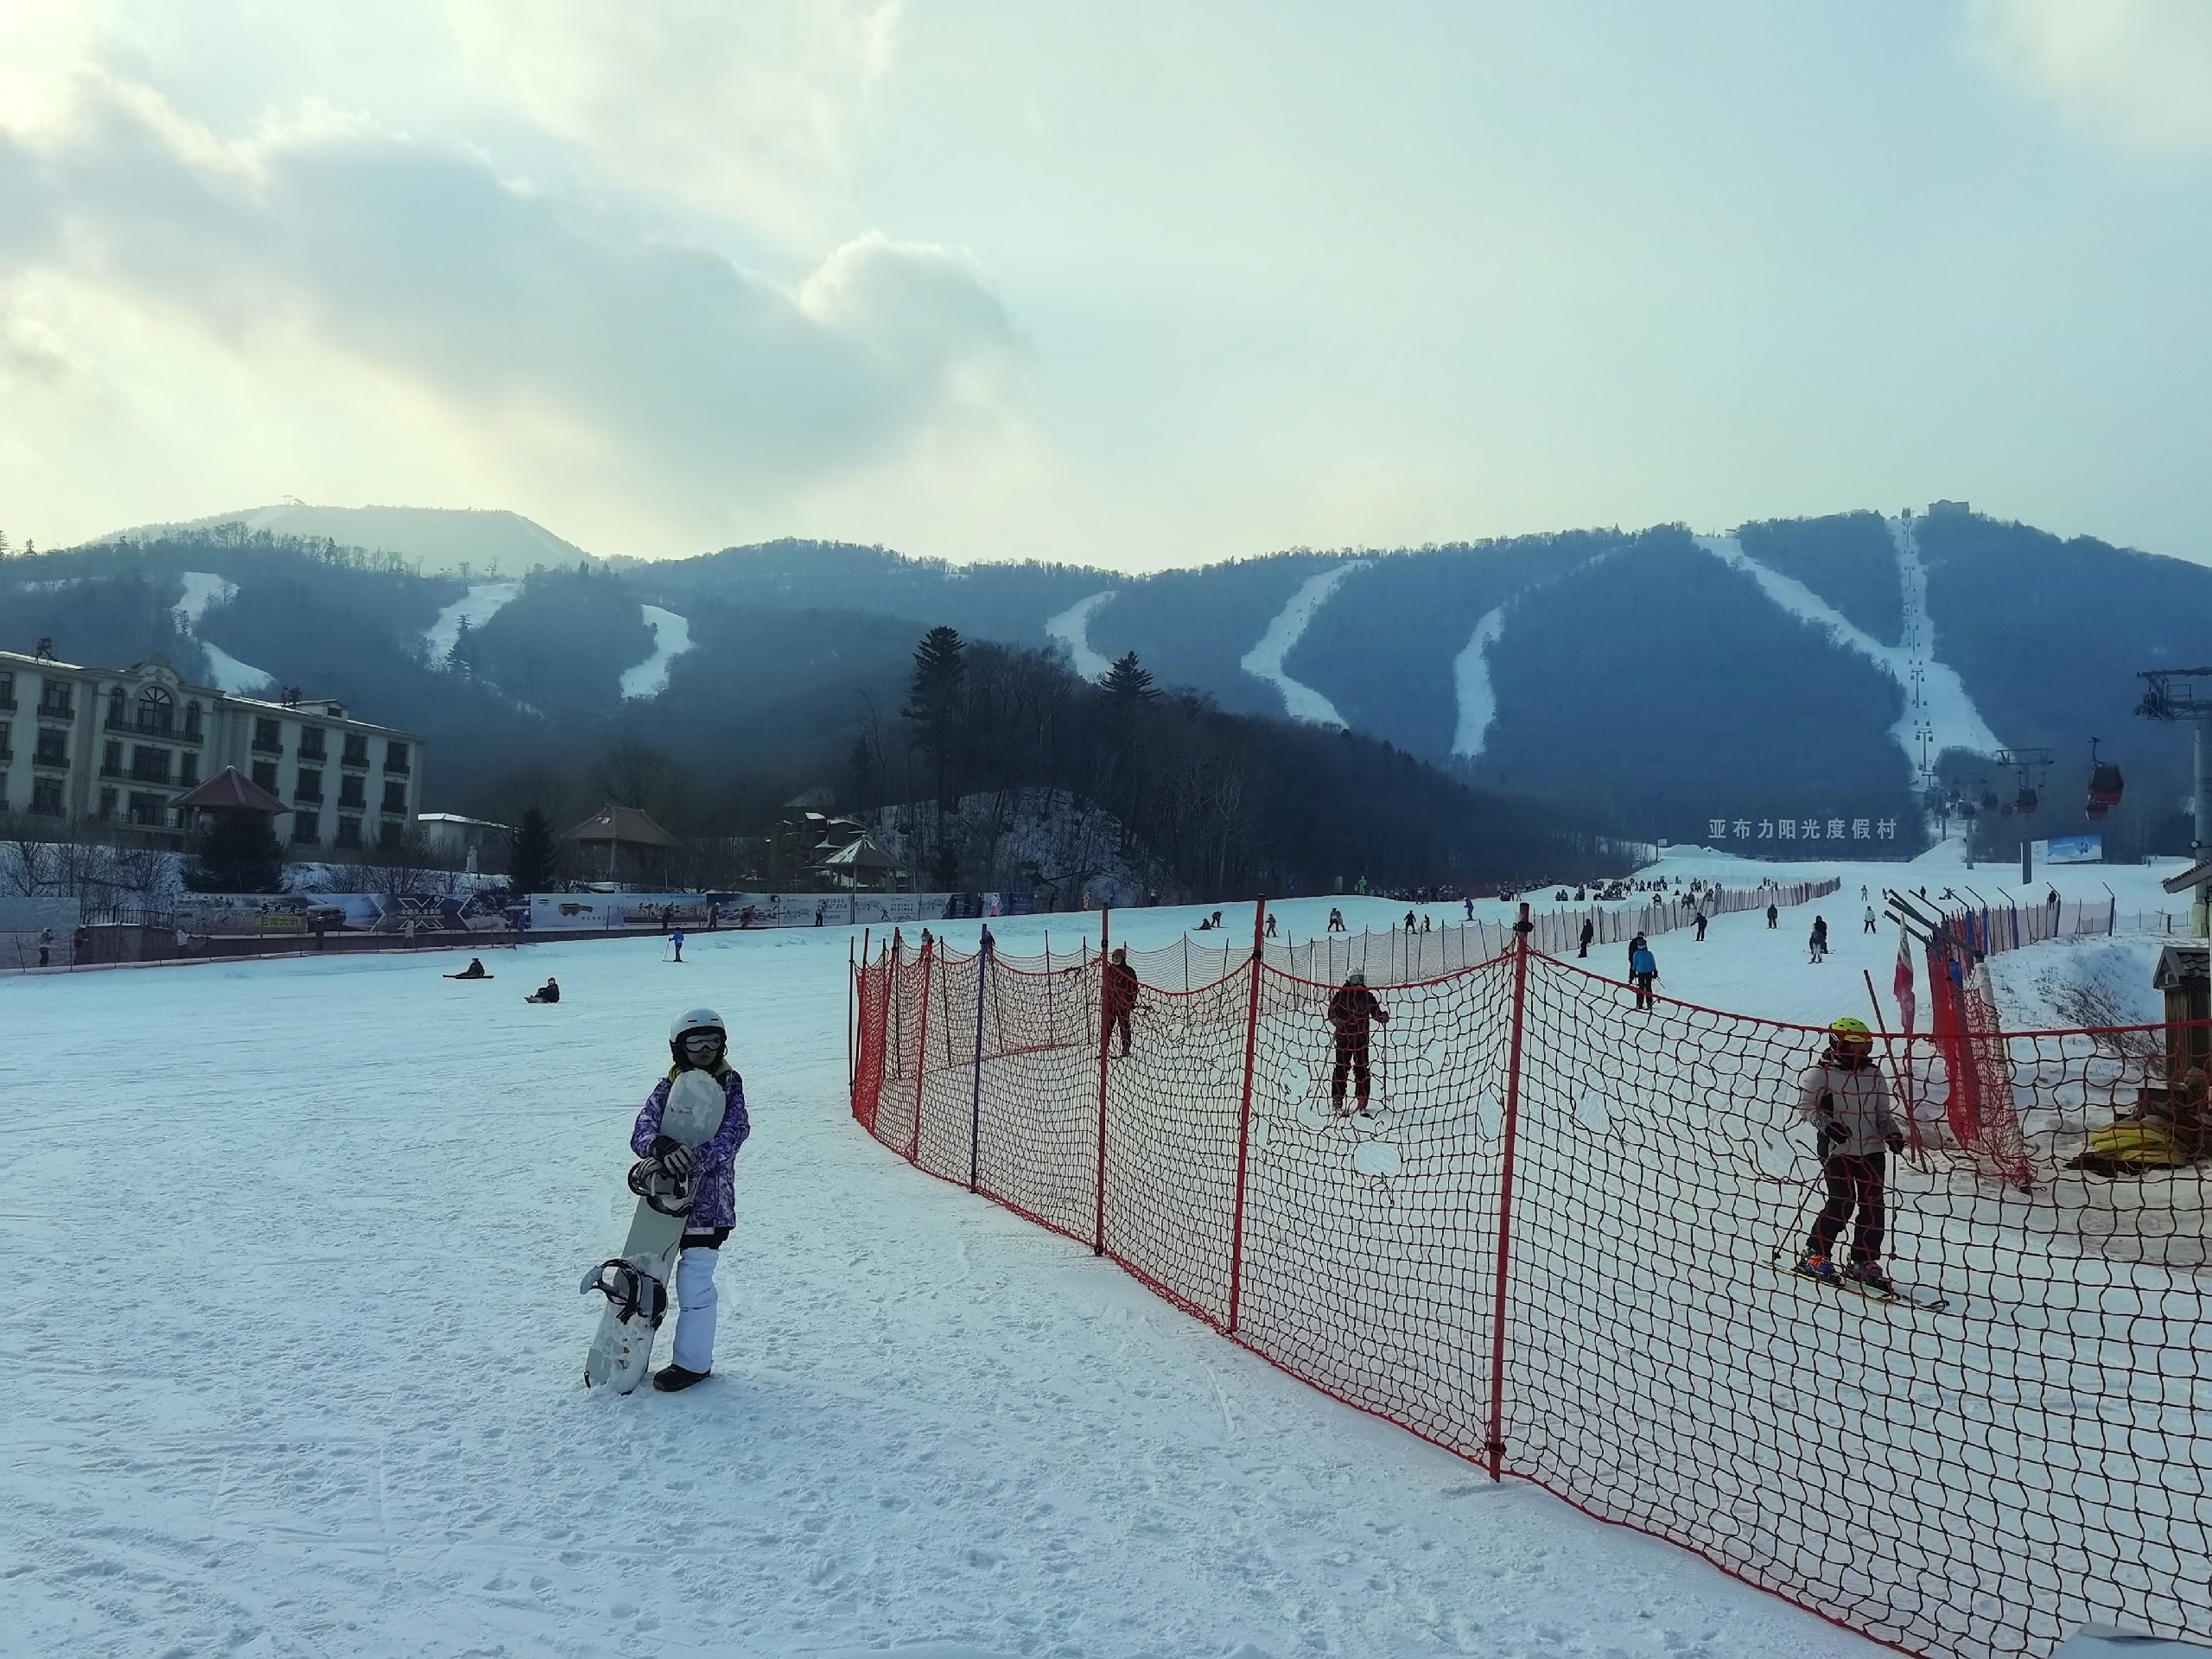 2020年12月23日中国雪乡游第二天：亚布力阳光度假村世界第一滑道。